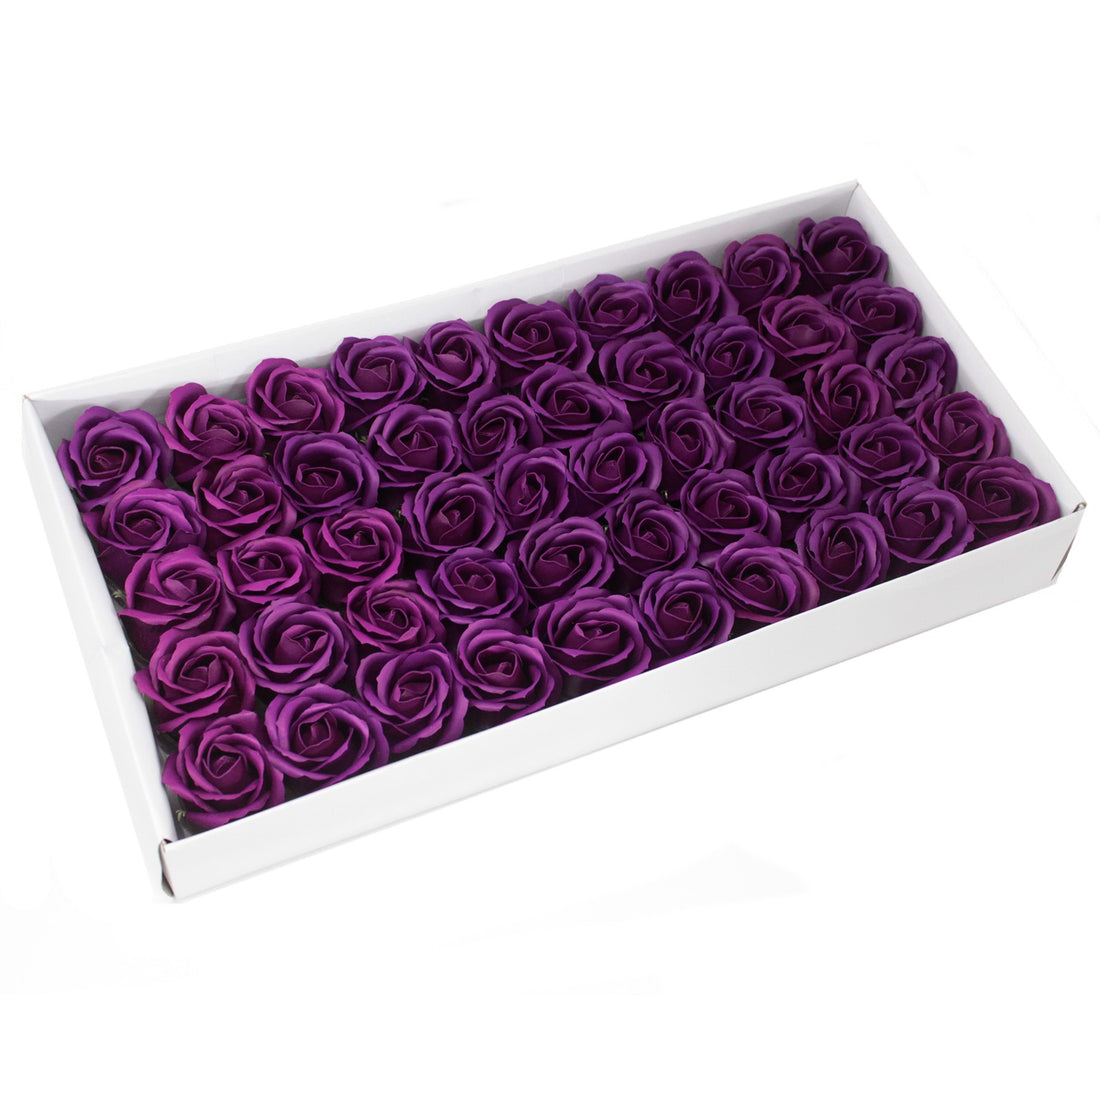 Craft Soap Flowers - Med Rose - Deep Violet x 10 pcs